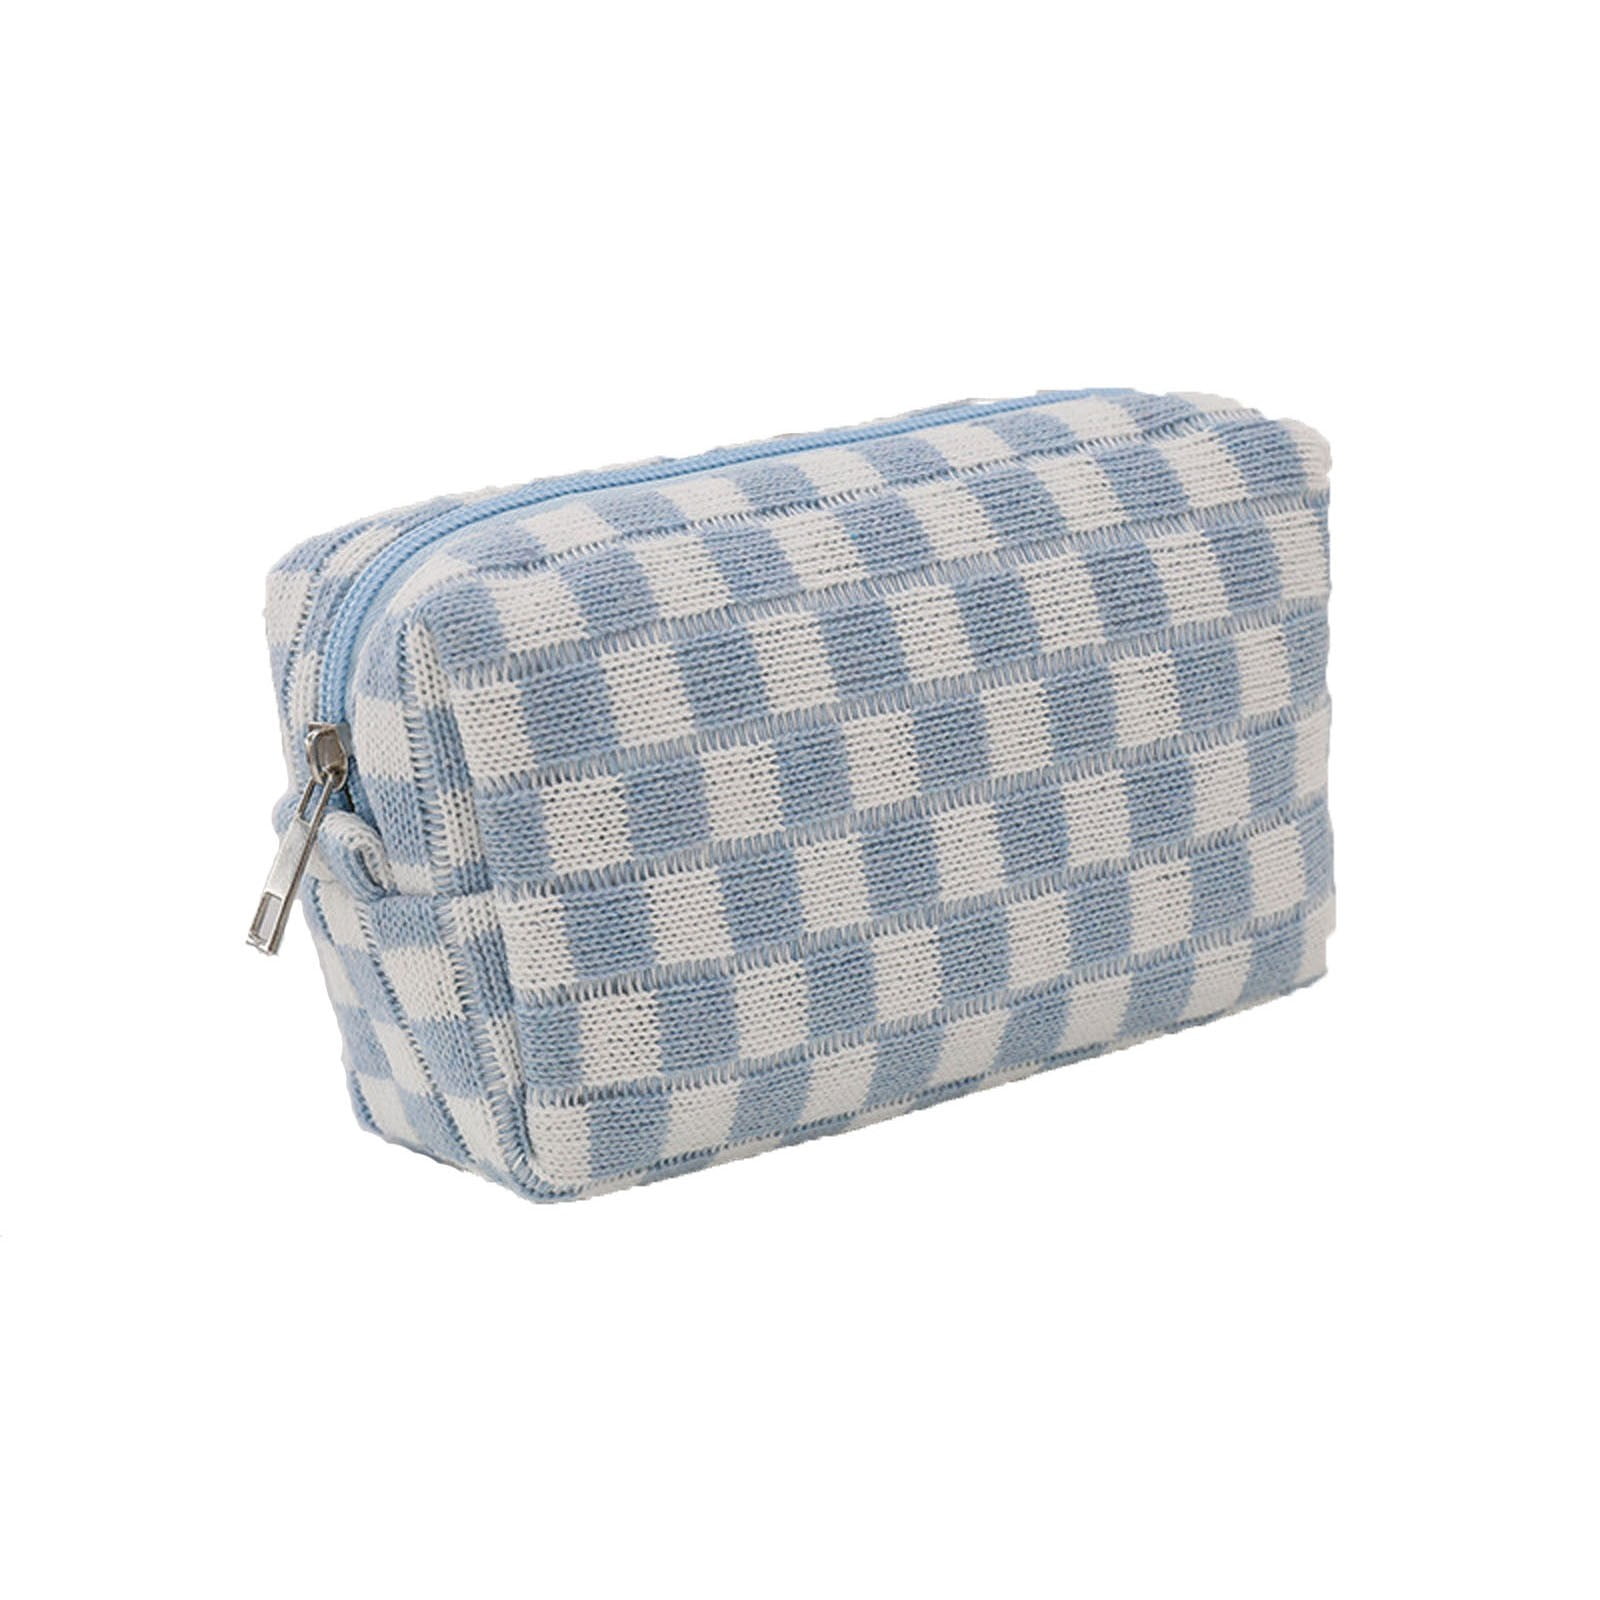 Checkered Pillow Bag Makeup Bag Women's Large Capacity Portable